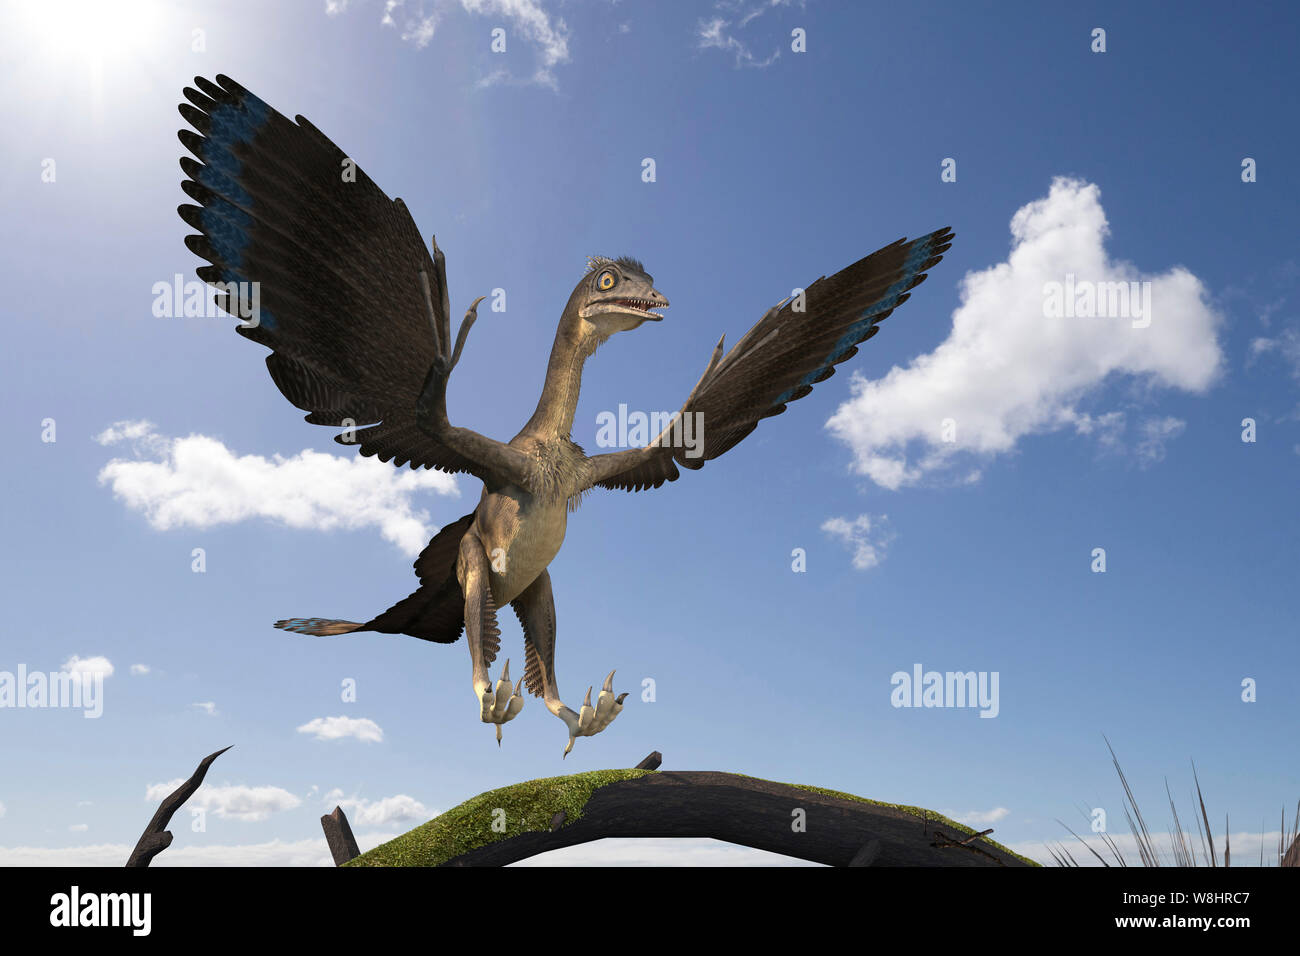 Dinosaure archéoptéryx, illustration. Ces oiseaux comme les dinosaures ont vécu il y a environ 150 millions d'années durant le Jurassique tardif. Banque D'Images